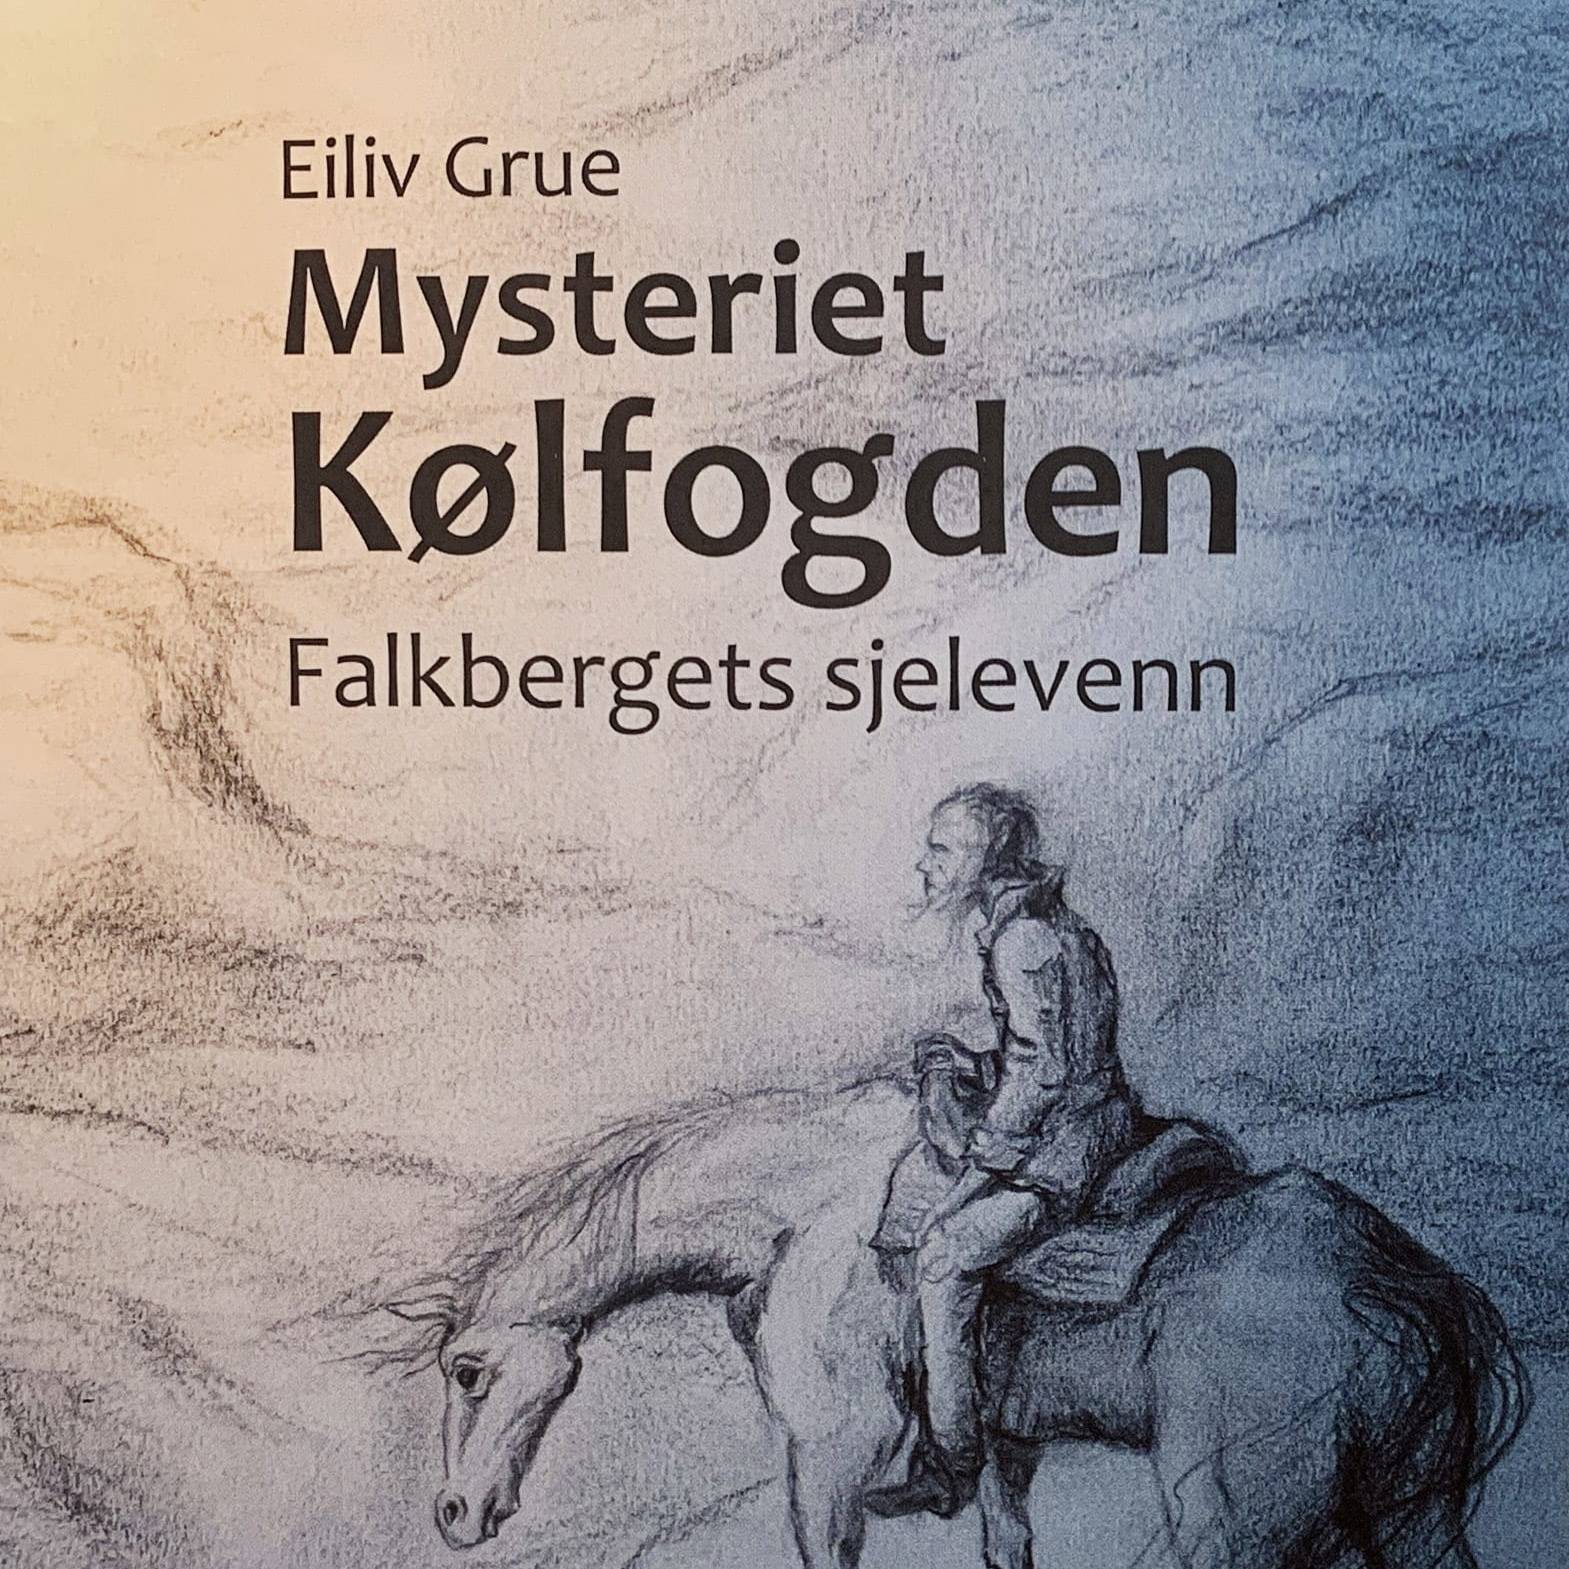 Mysteriet Kølfogden, av Eiliv Grue.